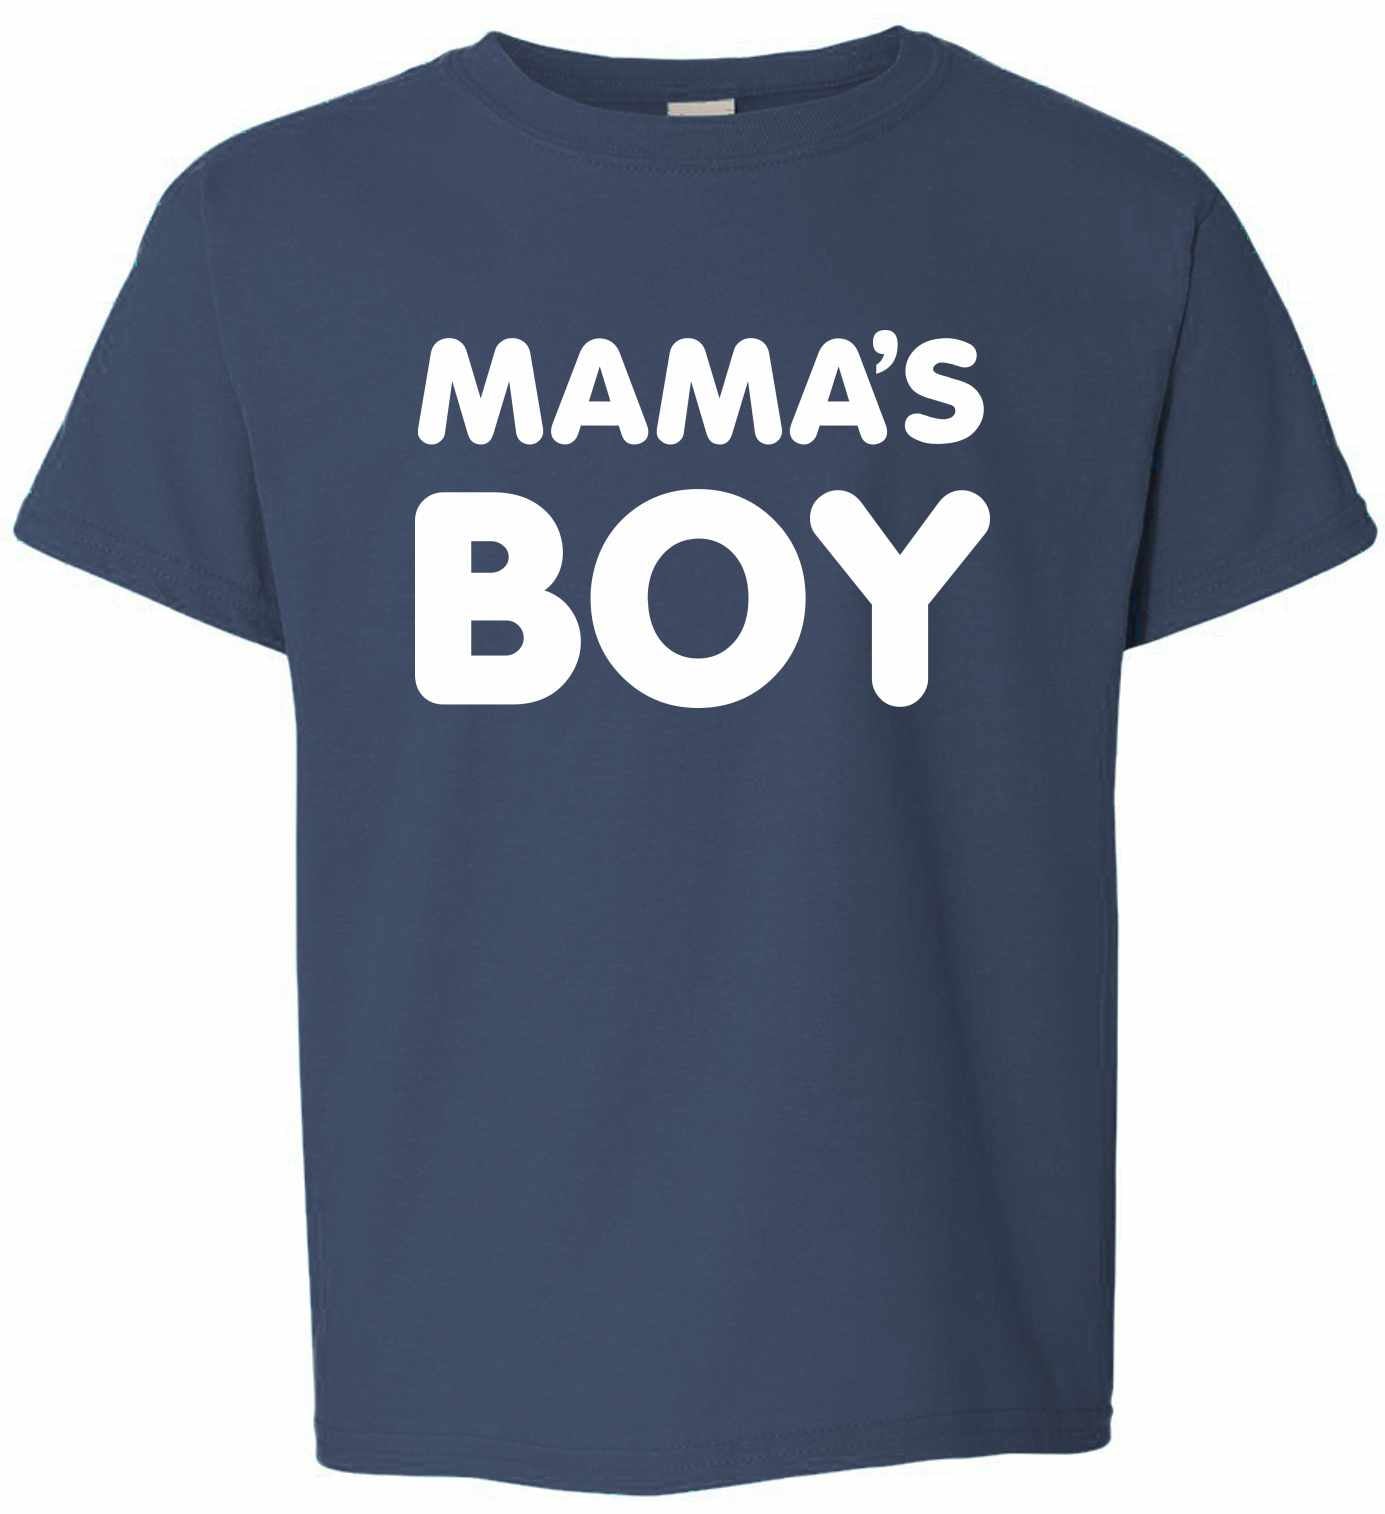 MAMA'S BOY on Kids T-Shirt (#1185-201)